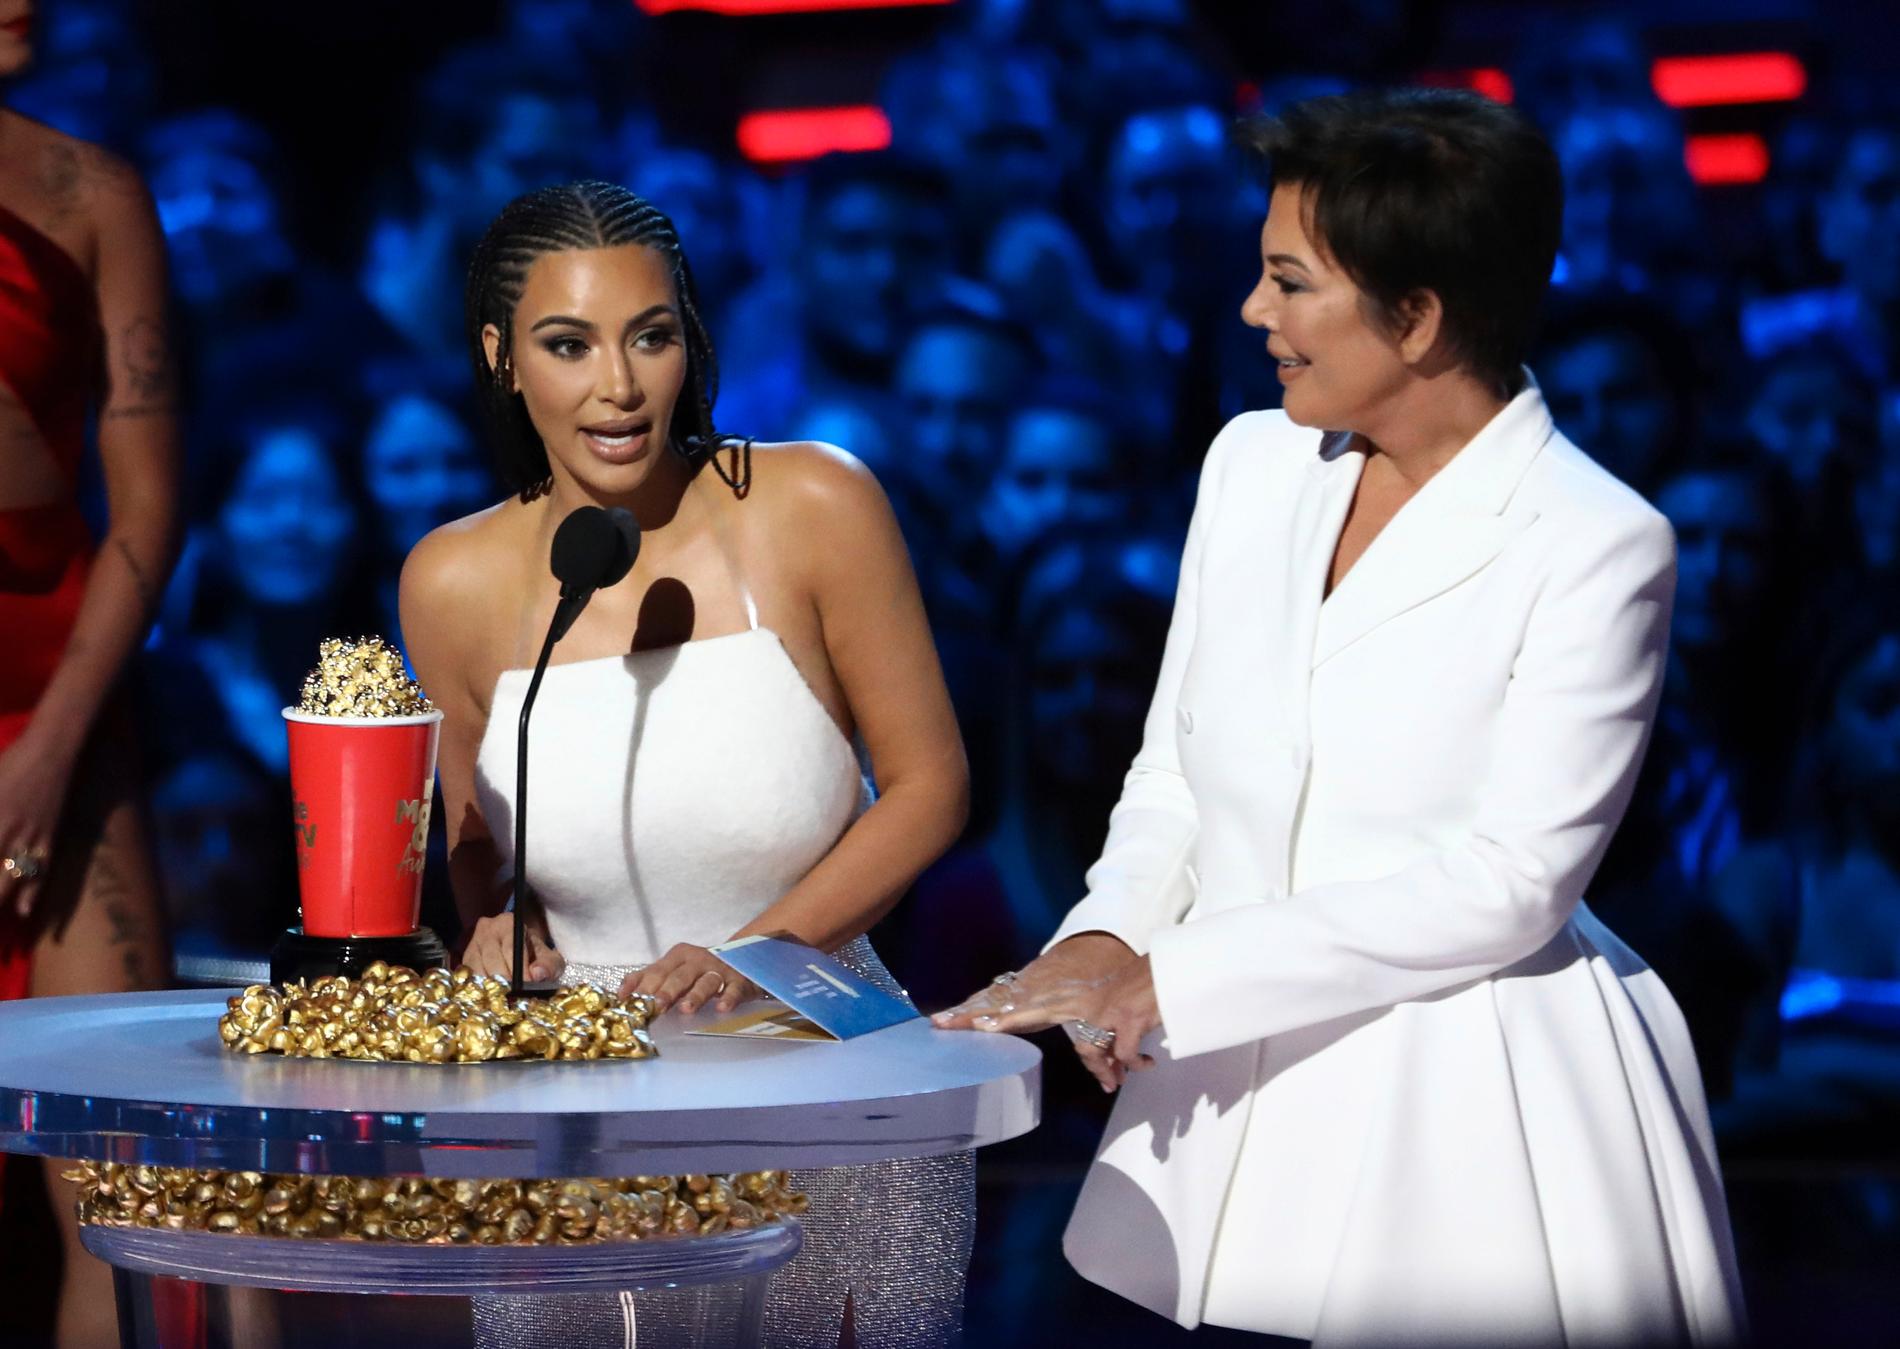 Ingrid Aguiluz hadde valgt Kim Kardashian dersom hun fikk feire jul med en kjendis.